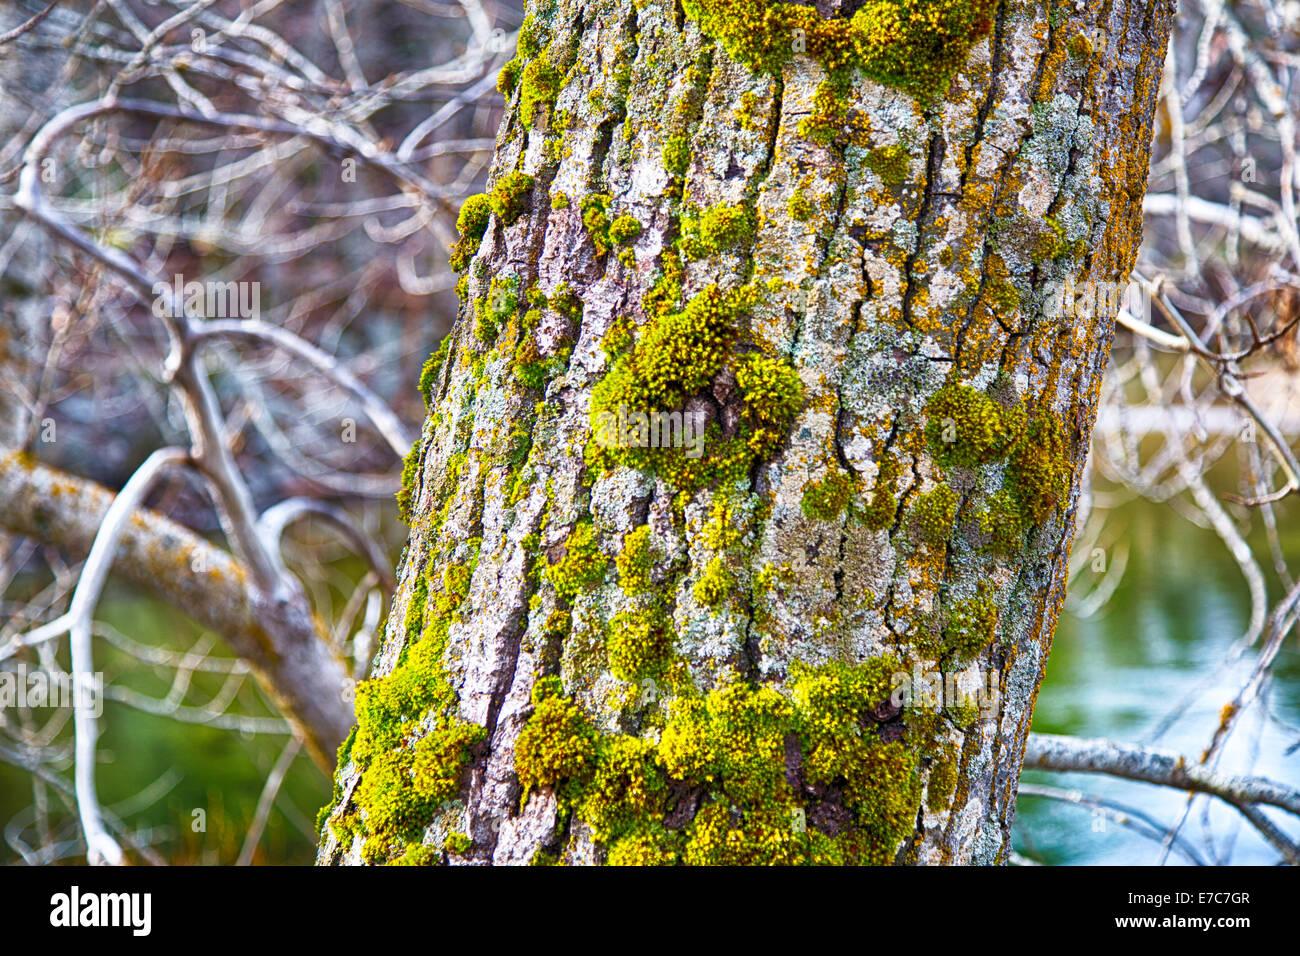 moss-on-the-bark-of-an-evergreen-tree-in-yosemite-national-park-california-E7C7GR.jpg